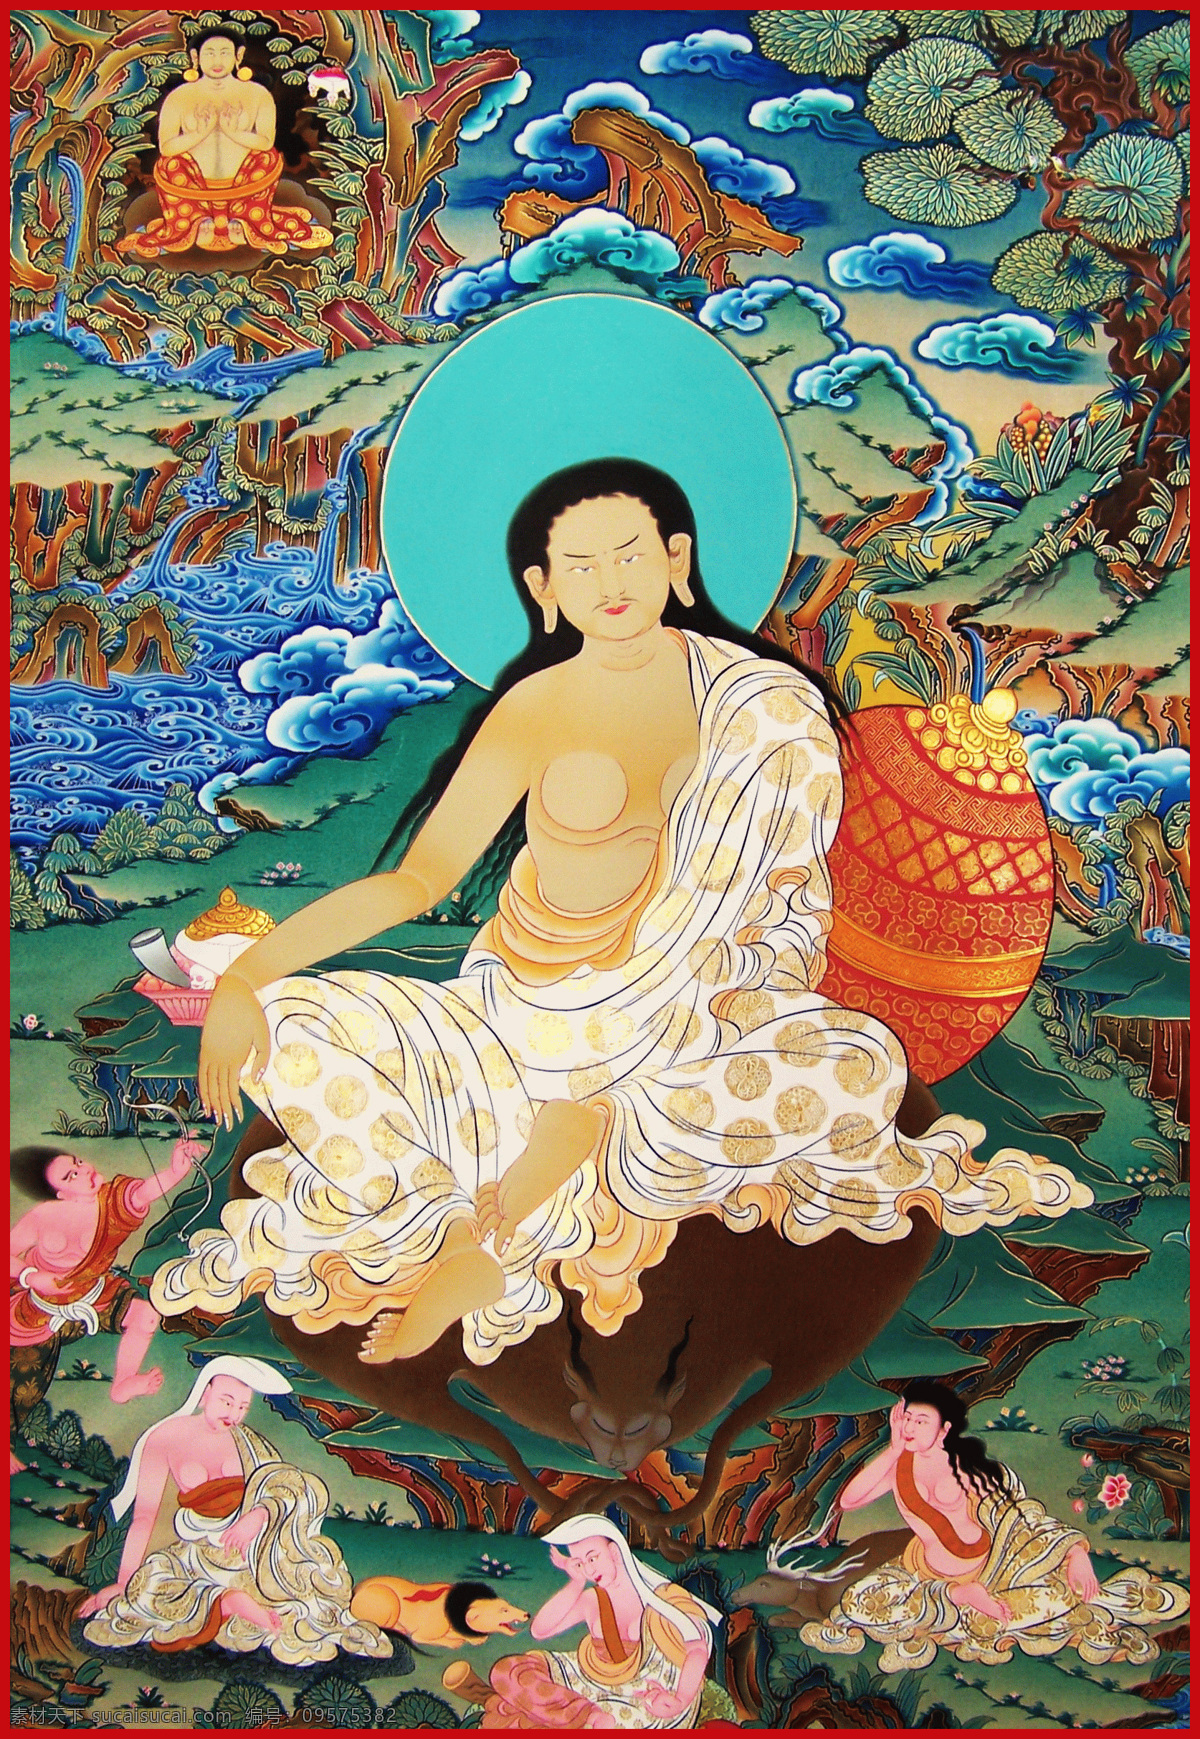 唐卡 西藏 密宗 佛 佛教 上师 成就者 活佛 菩萨 宗教信仰 文化艺术